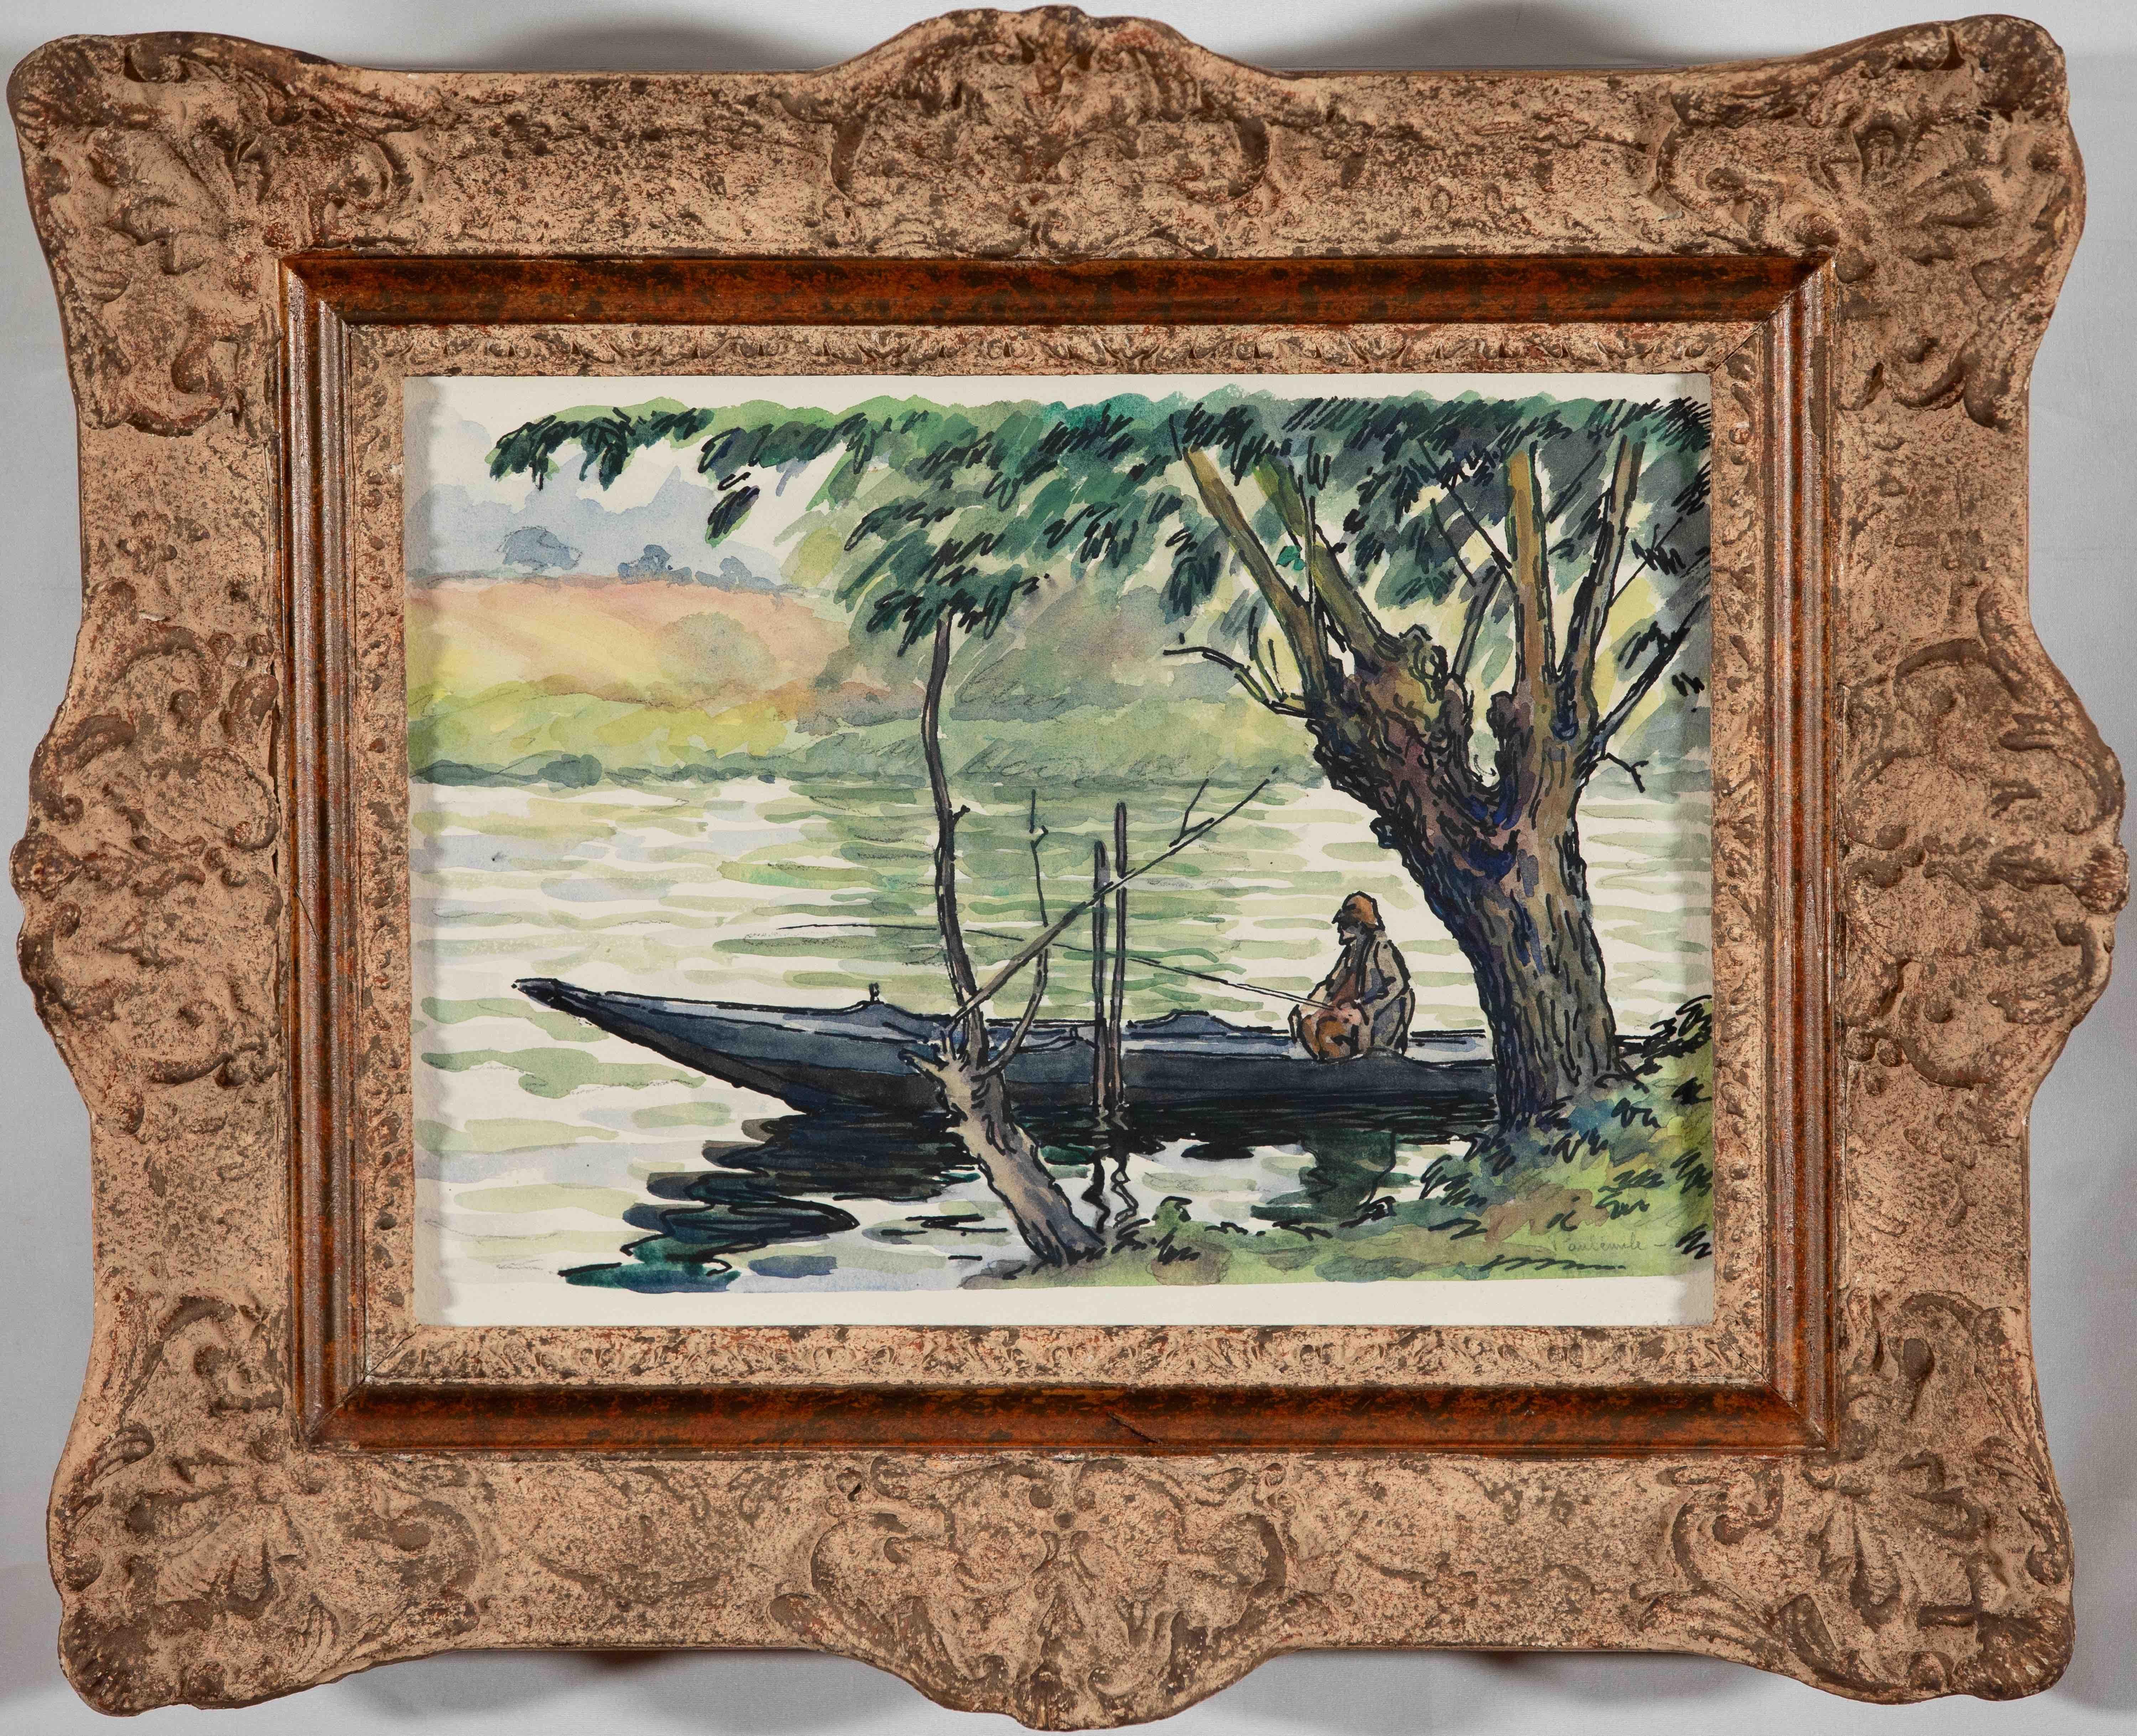 Pêcheur sur la Cure par Paulémile Pissarro - Aquarelle de paysage - Painting de Paul Emile Pissarro